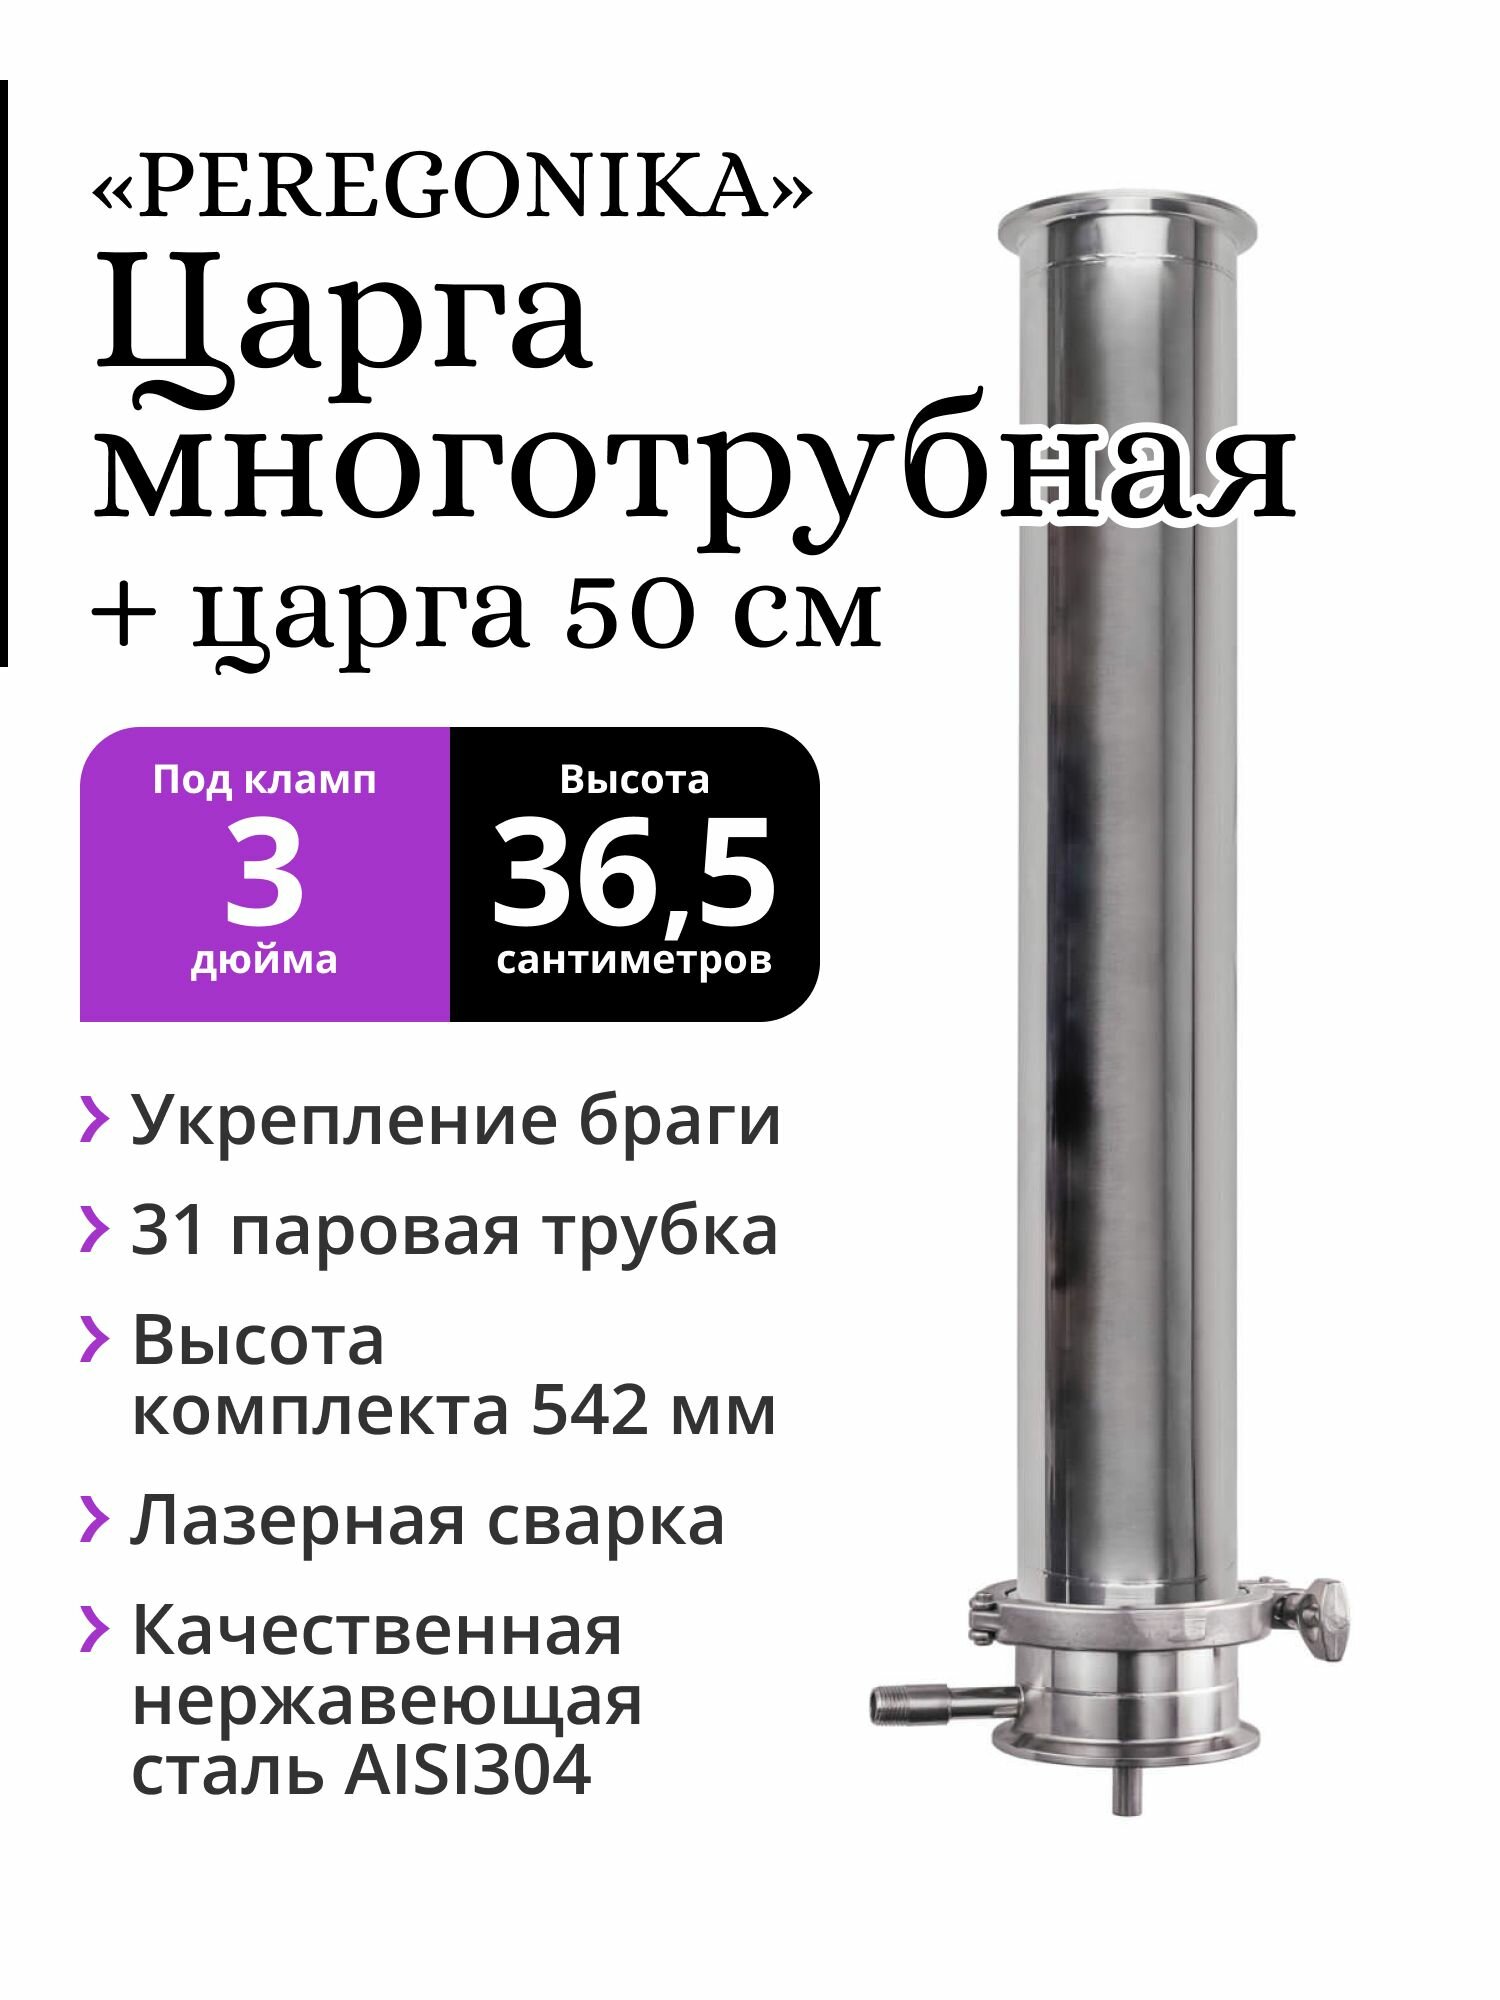 Многотрубная царга (МЦ) 3 дюйма PEREGONIKA 36,5 см в царге 50 см